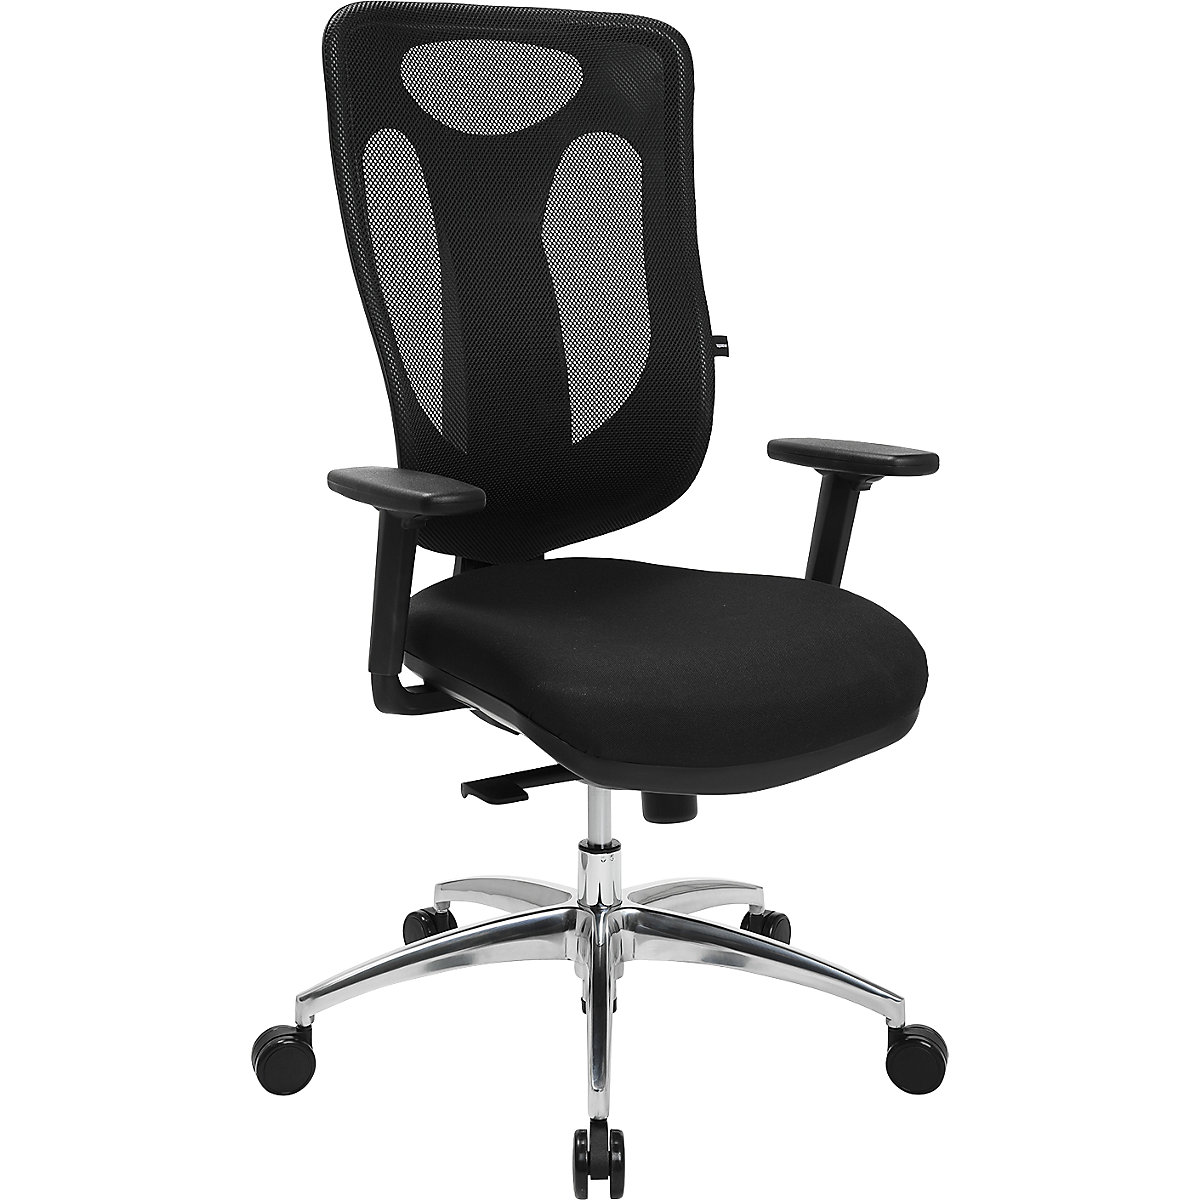 NET PRO 100 AL office swivel chair – Topstar